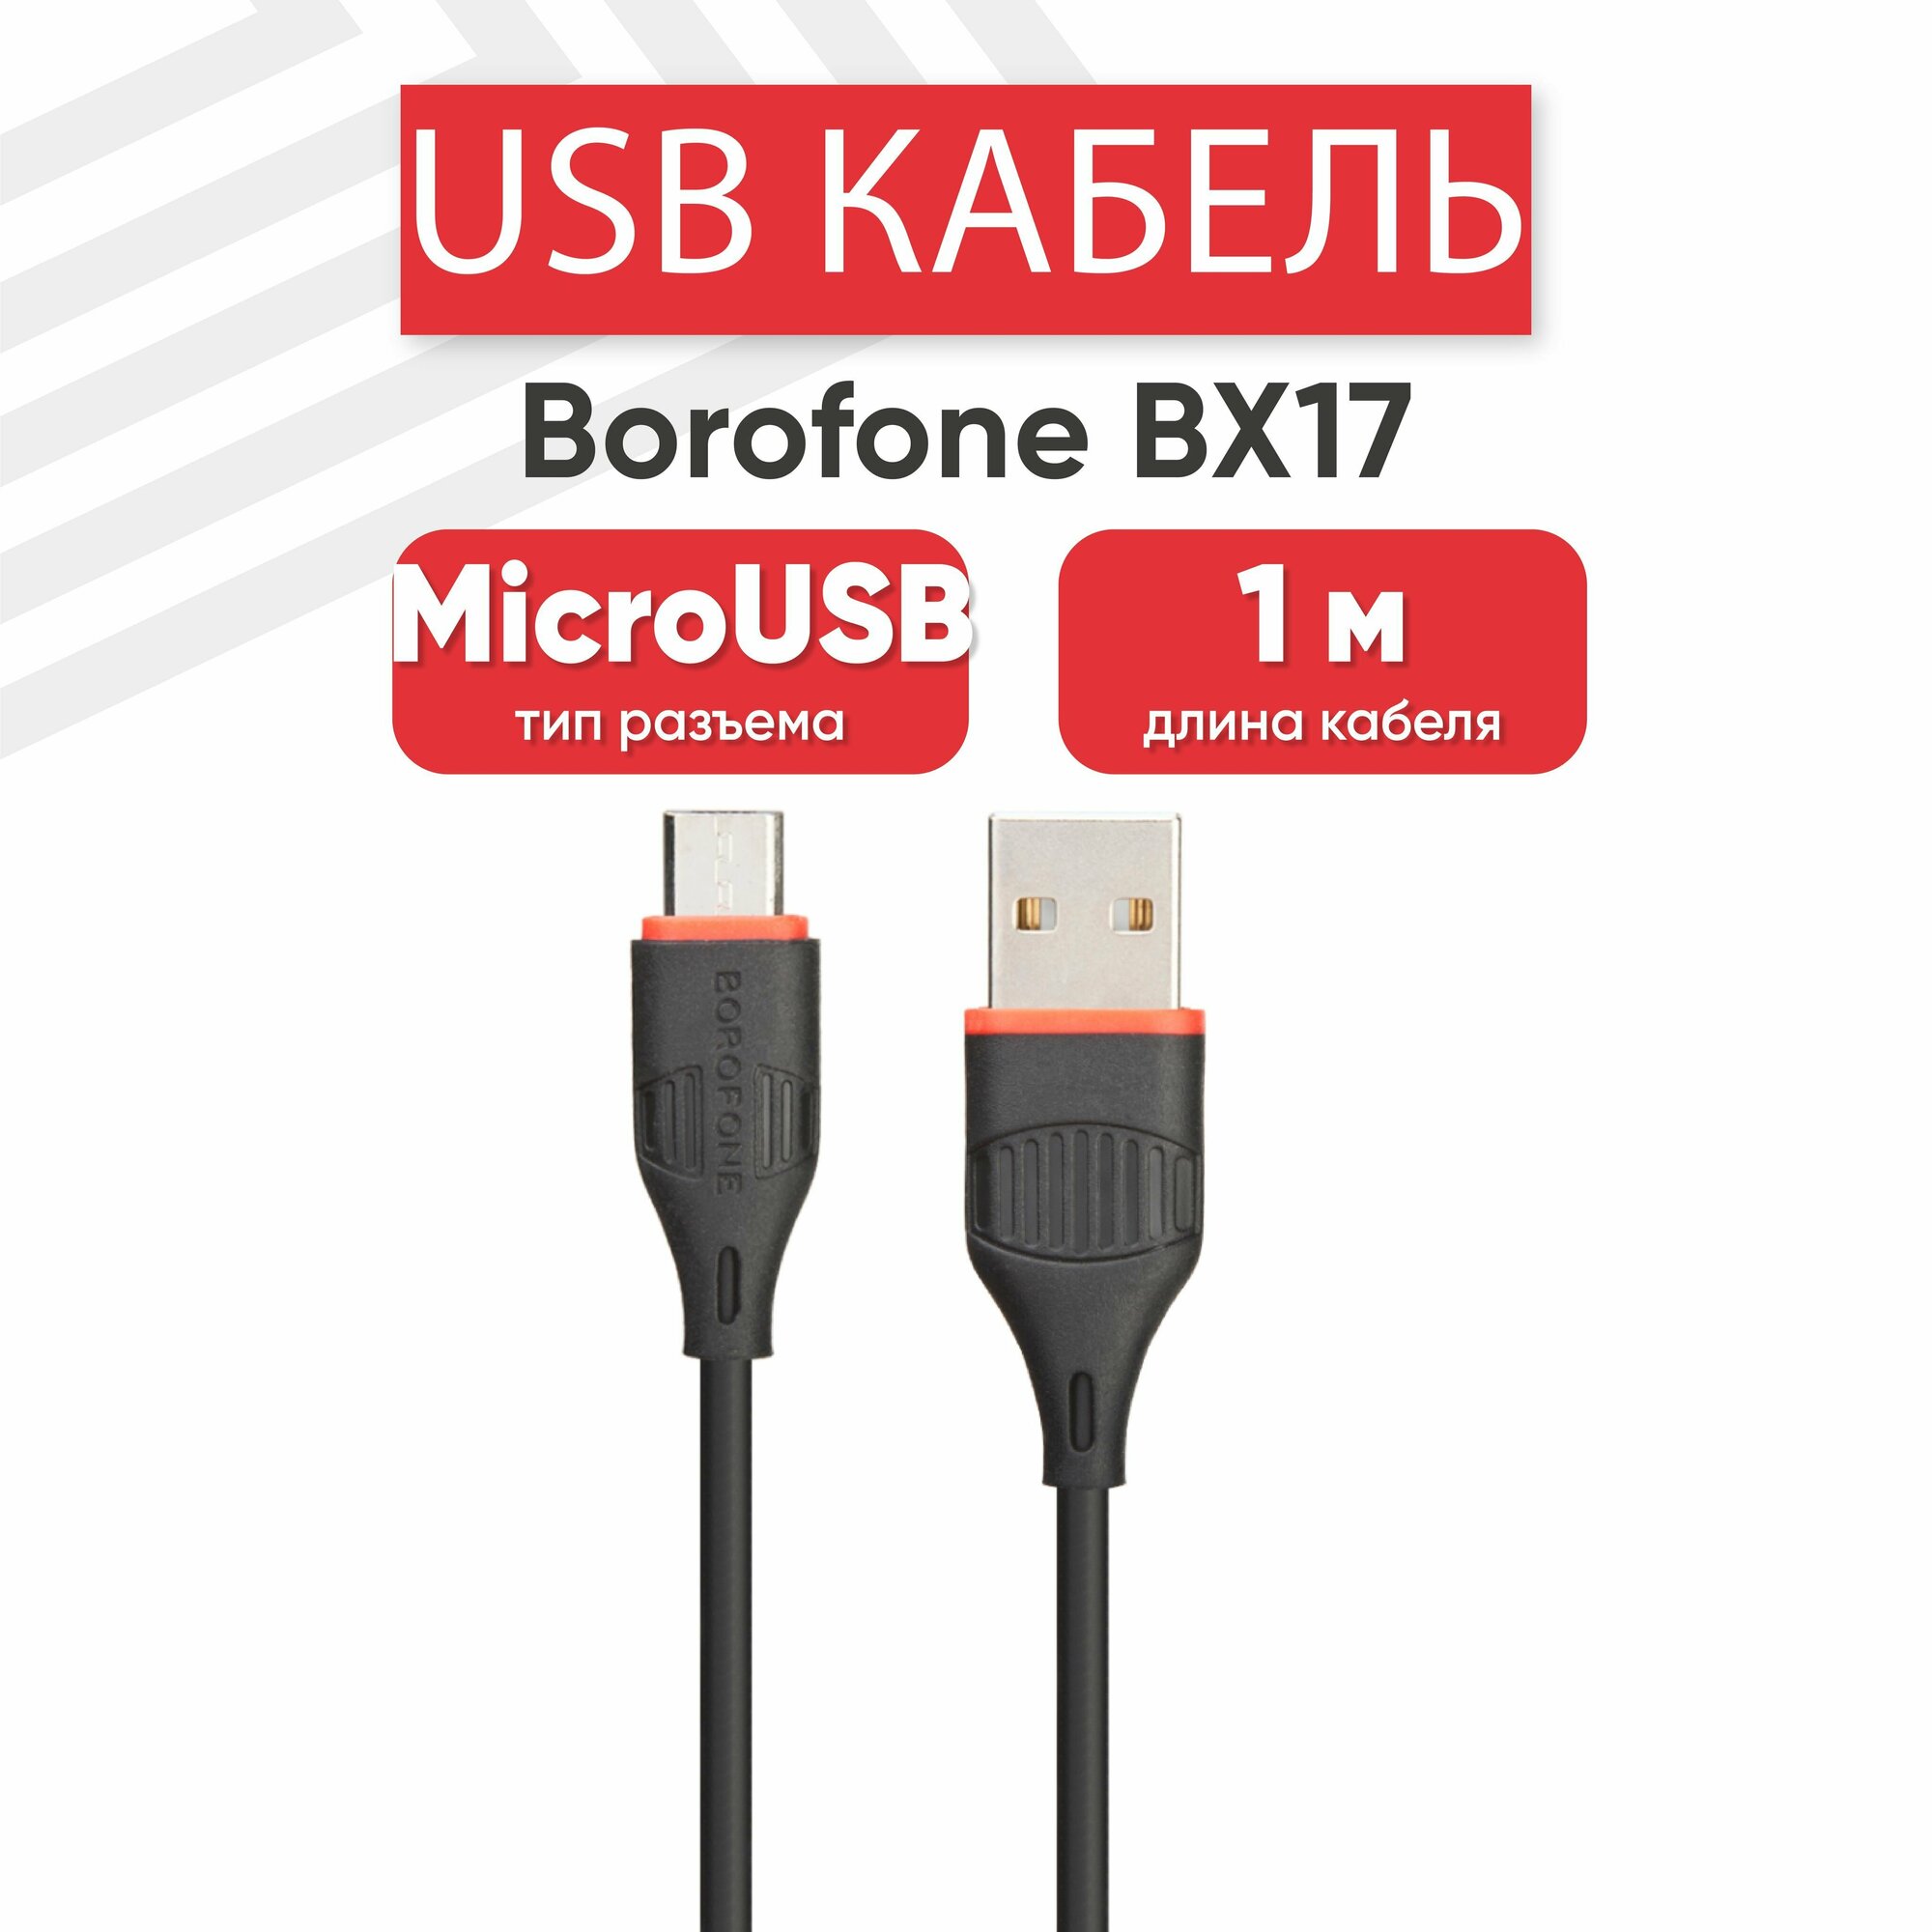 USB кабель для мобильных устройств BOROFONE BX17 для зарядки/передачи данных MicroUSB 2A Fast Charging 1м PVC черный